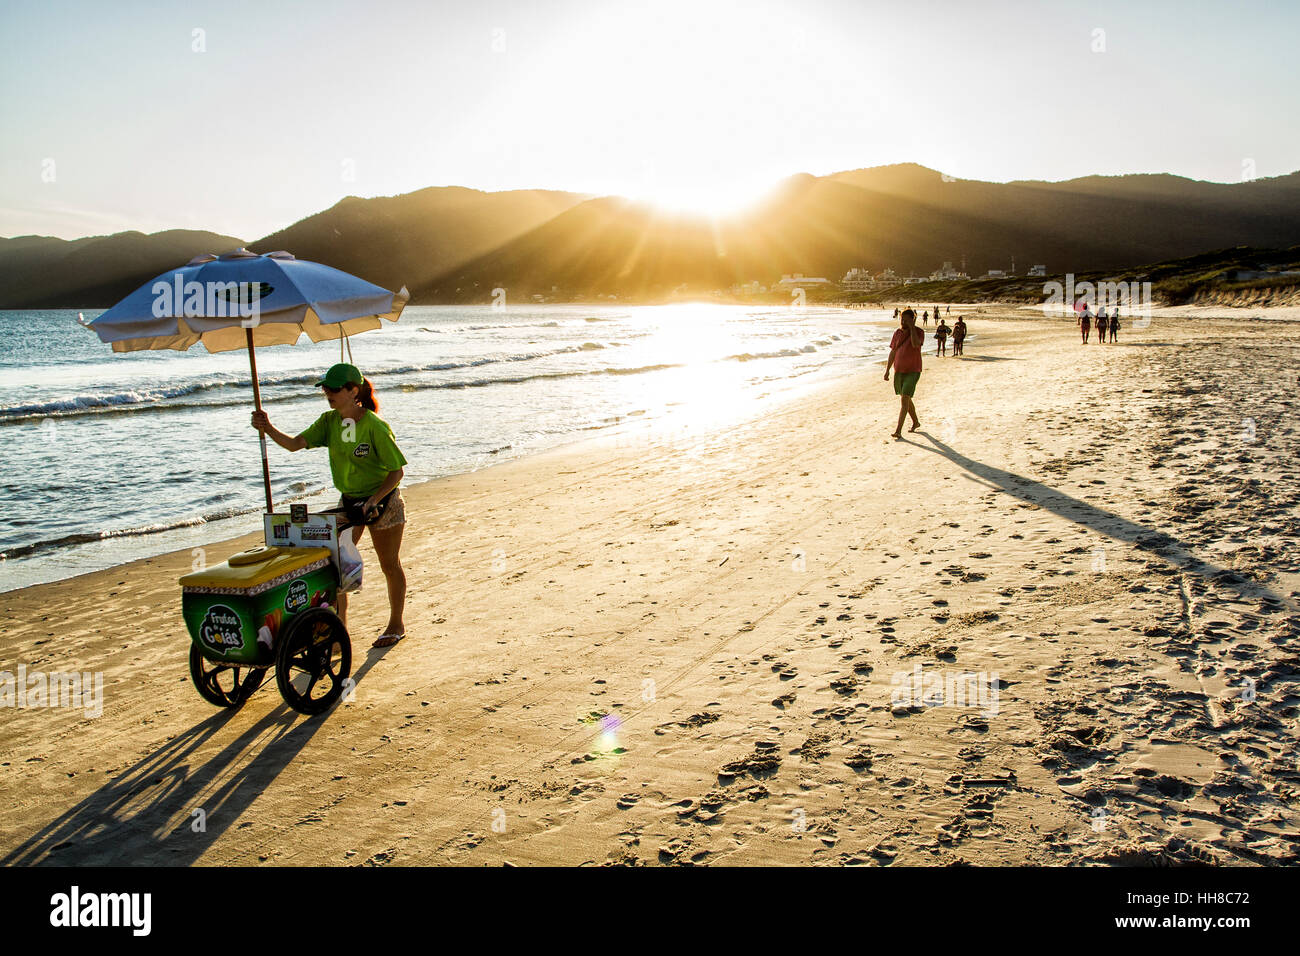 Strandverkäufer, der mit einem Eiswagen am Acores Beach läuft. Florianopolis, Santa Catarina, Brasilien. Stockfoto